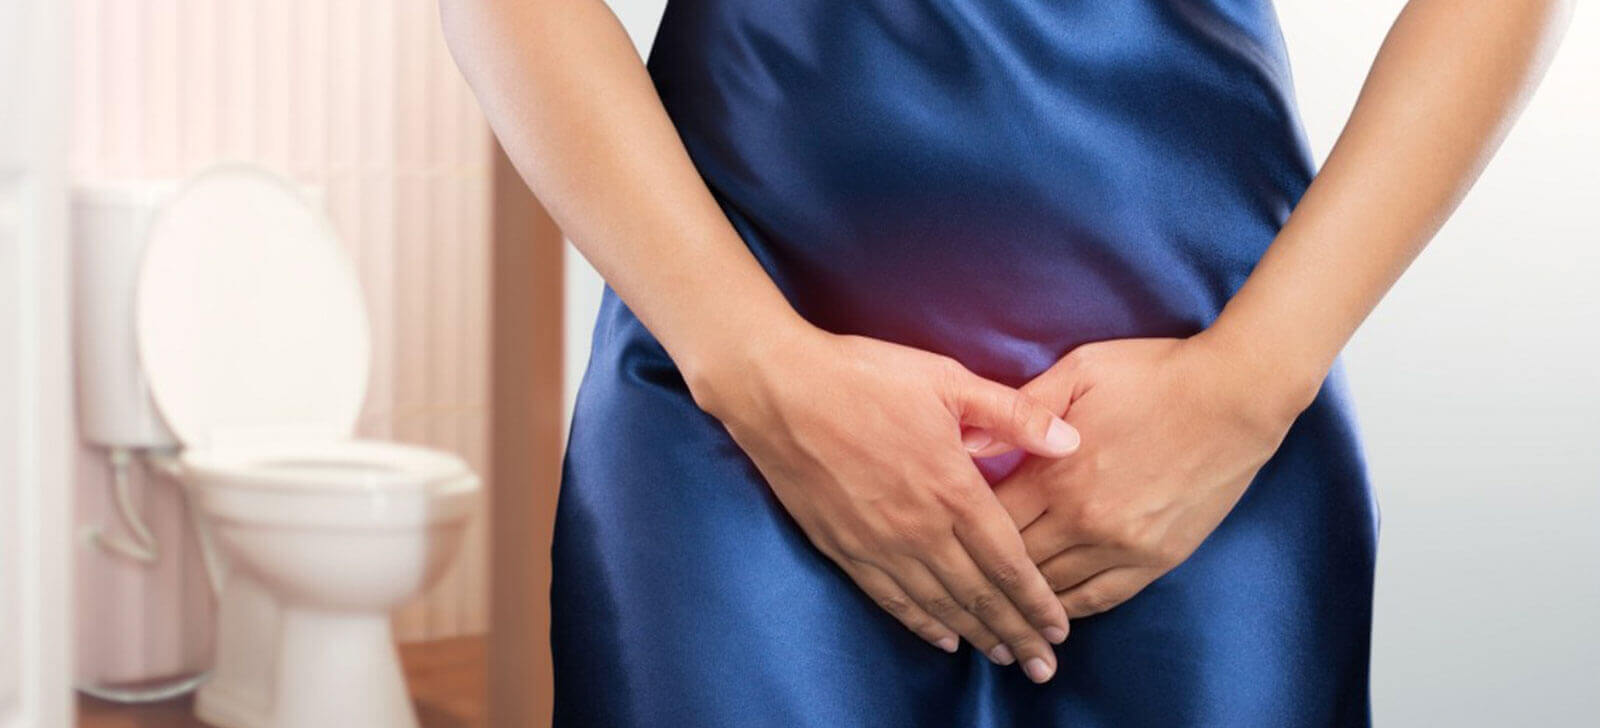 Infecção urinária: conheça as causas, sintomas e tratamentos